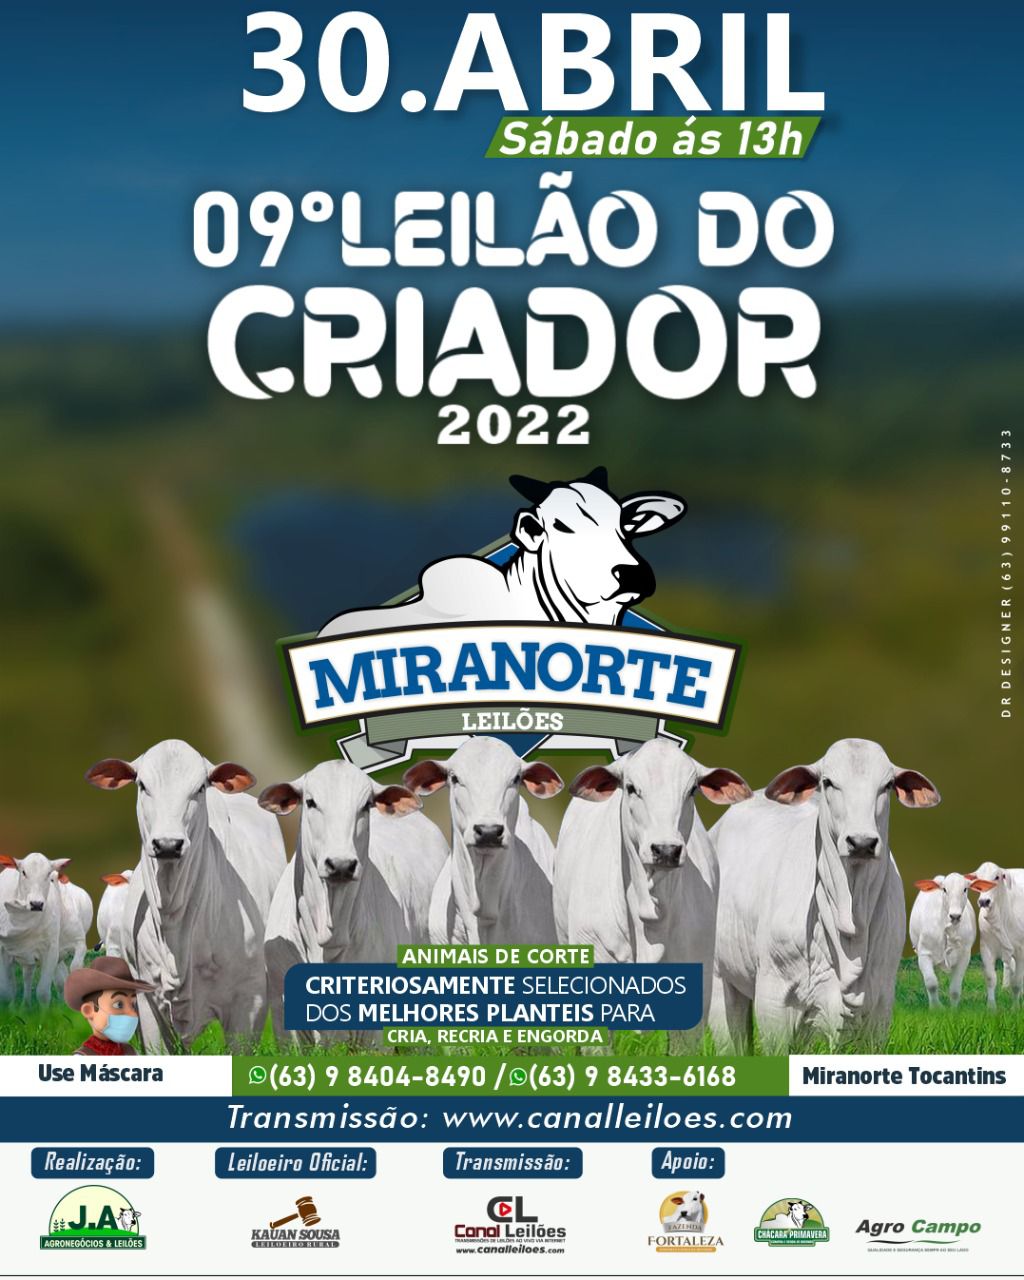 09º LEILAO DO CRIADOR 2022